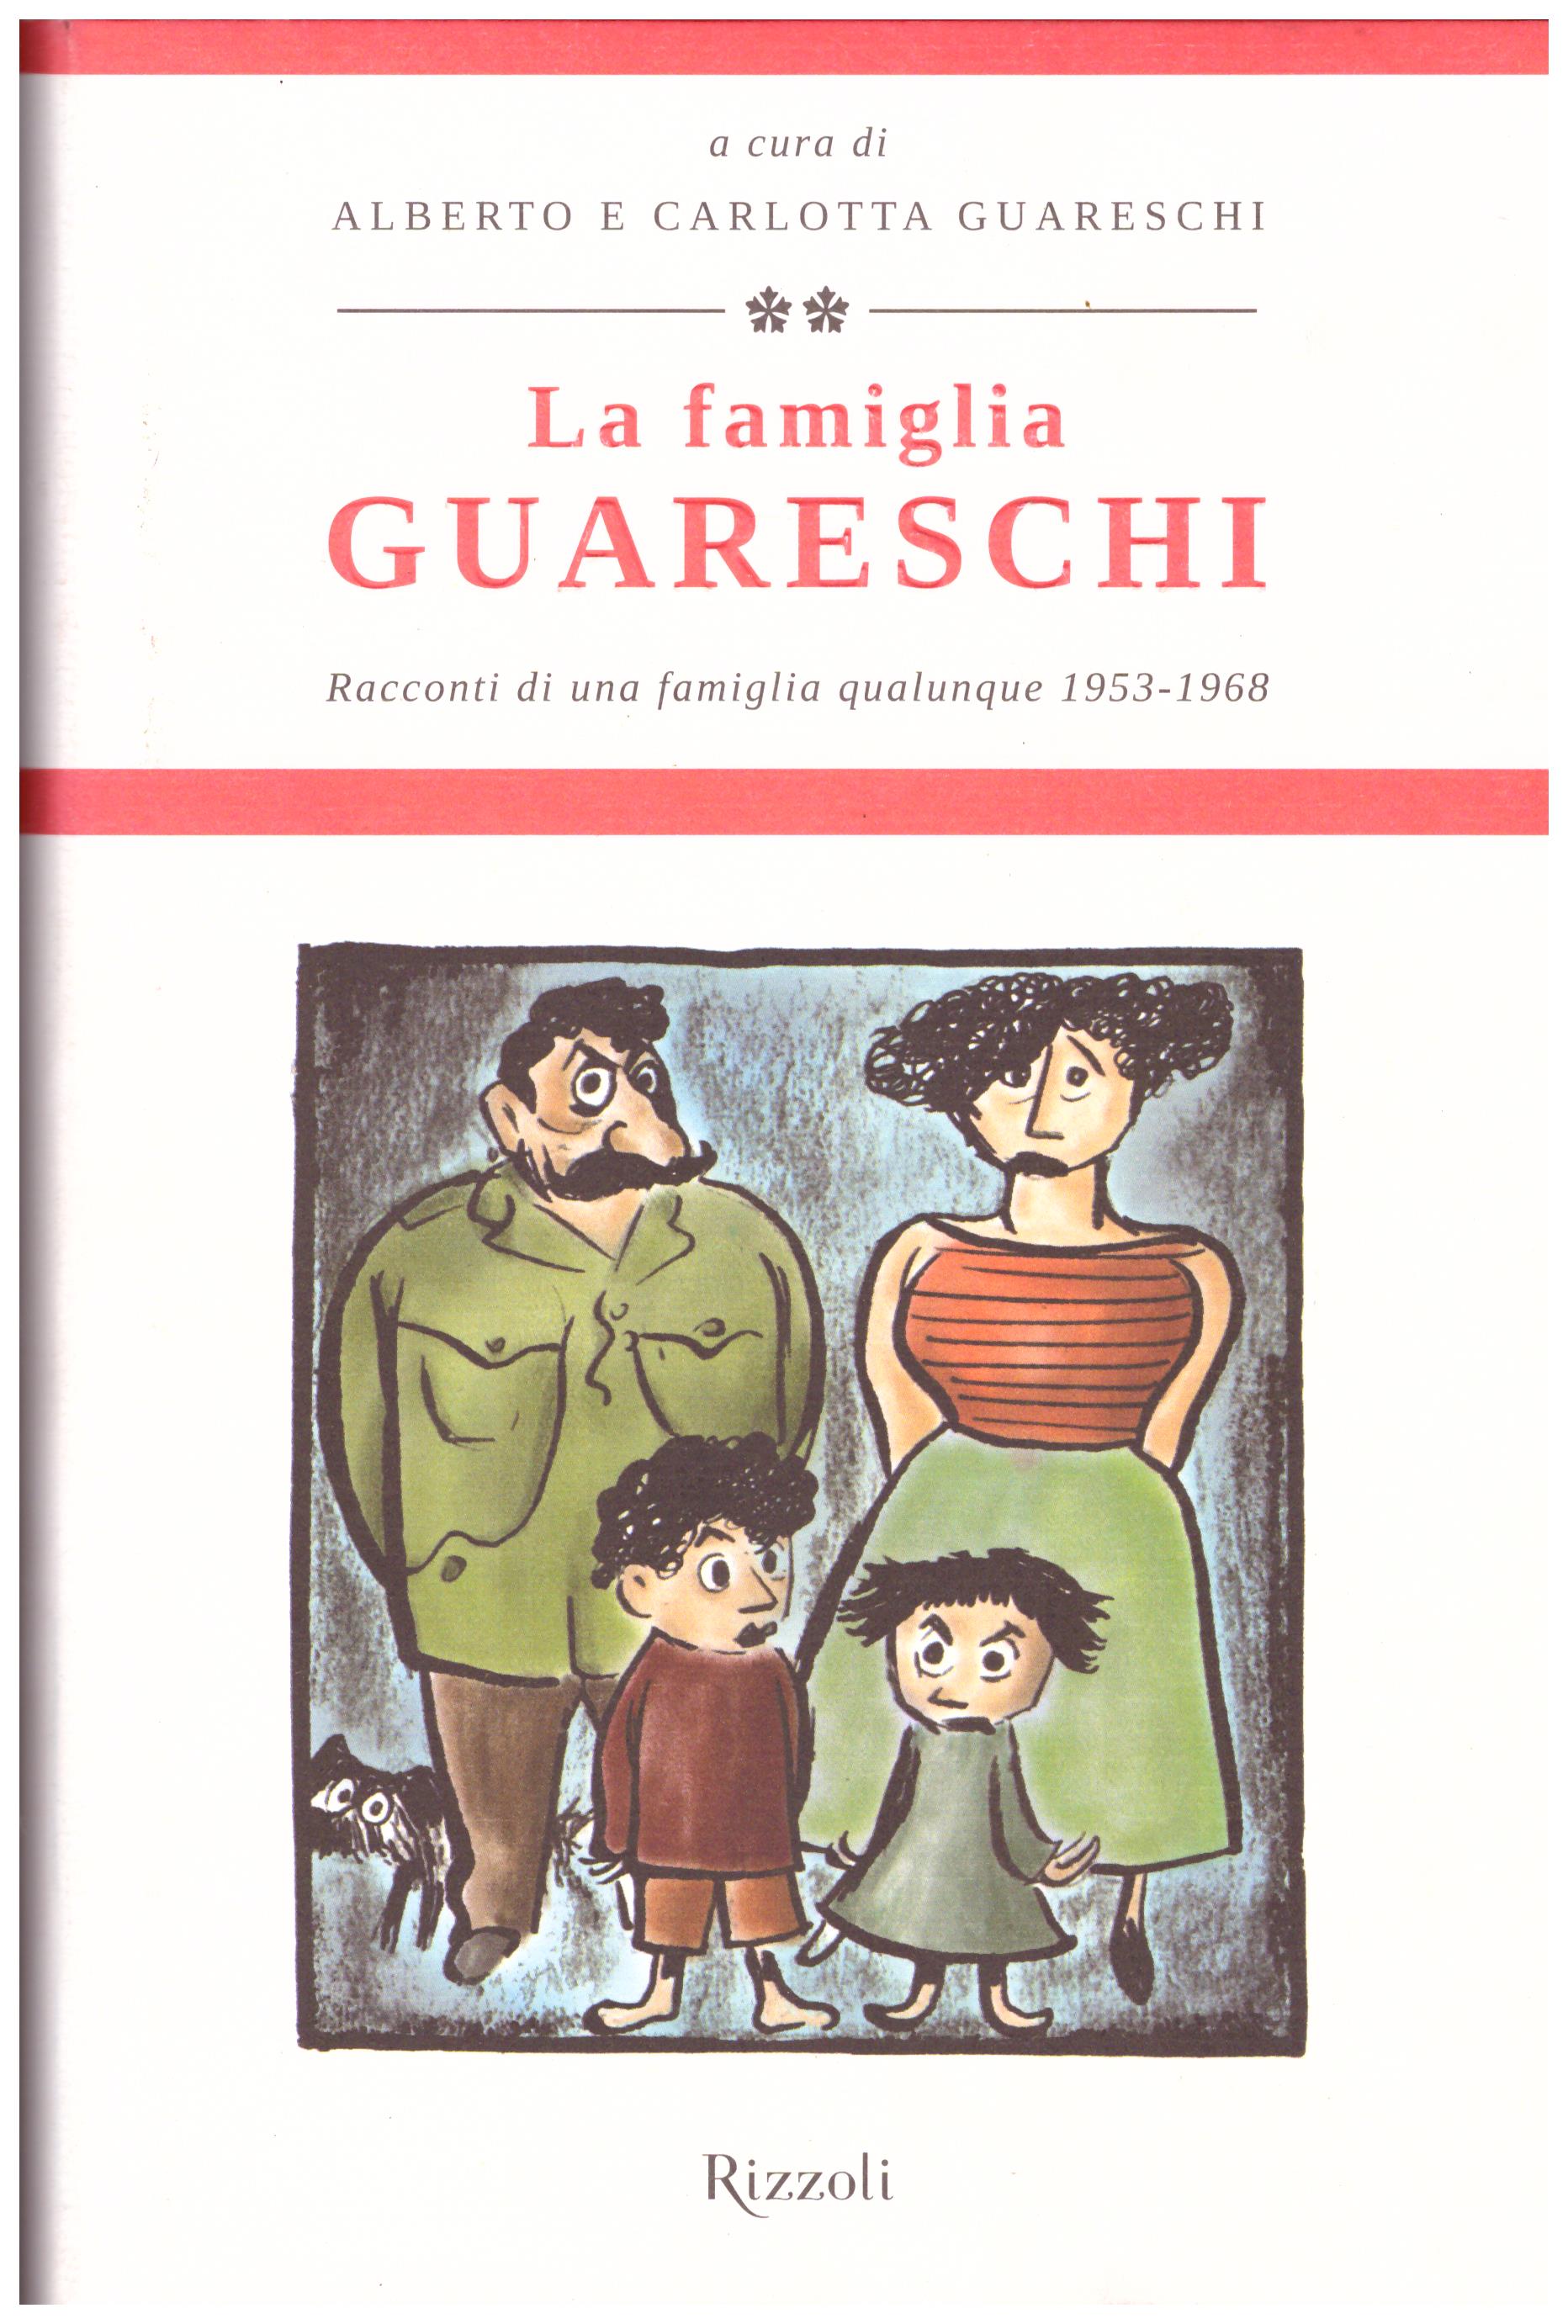 Titolo: La famiglia Guerreschi Autore: AA.VV.  Editore: Rizzoli, 2011